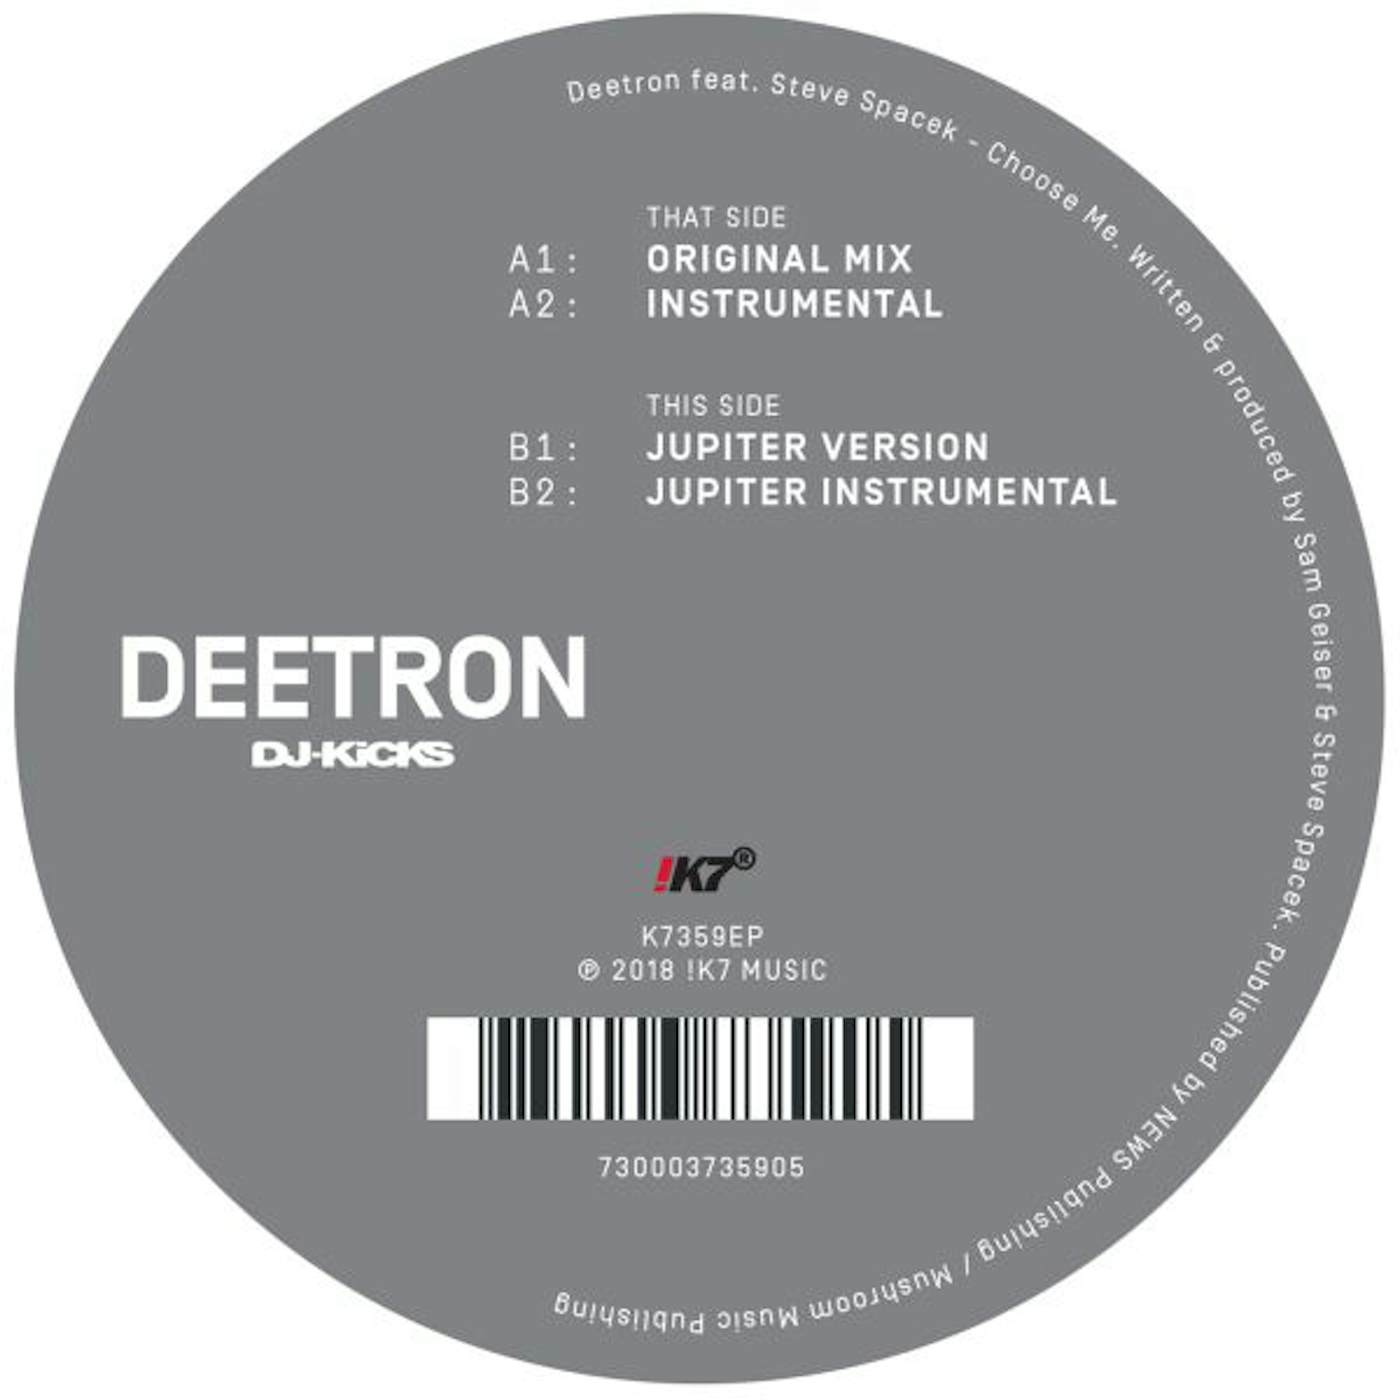 Deetron & Steve Spacek CHOOSE ME Vinyl Record